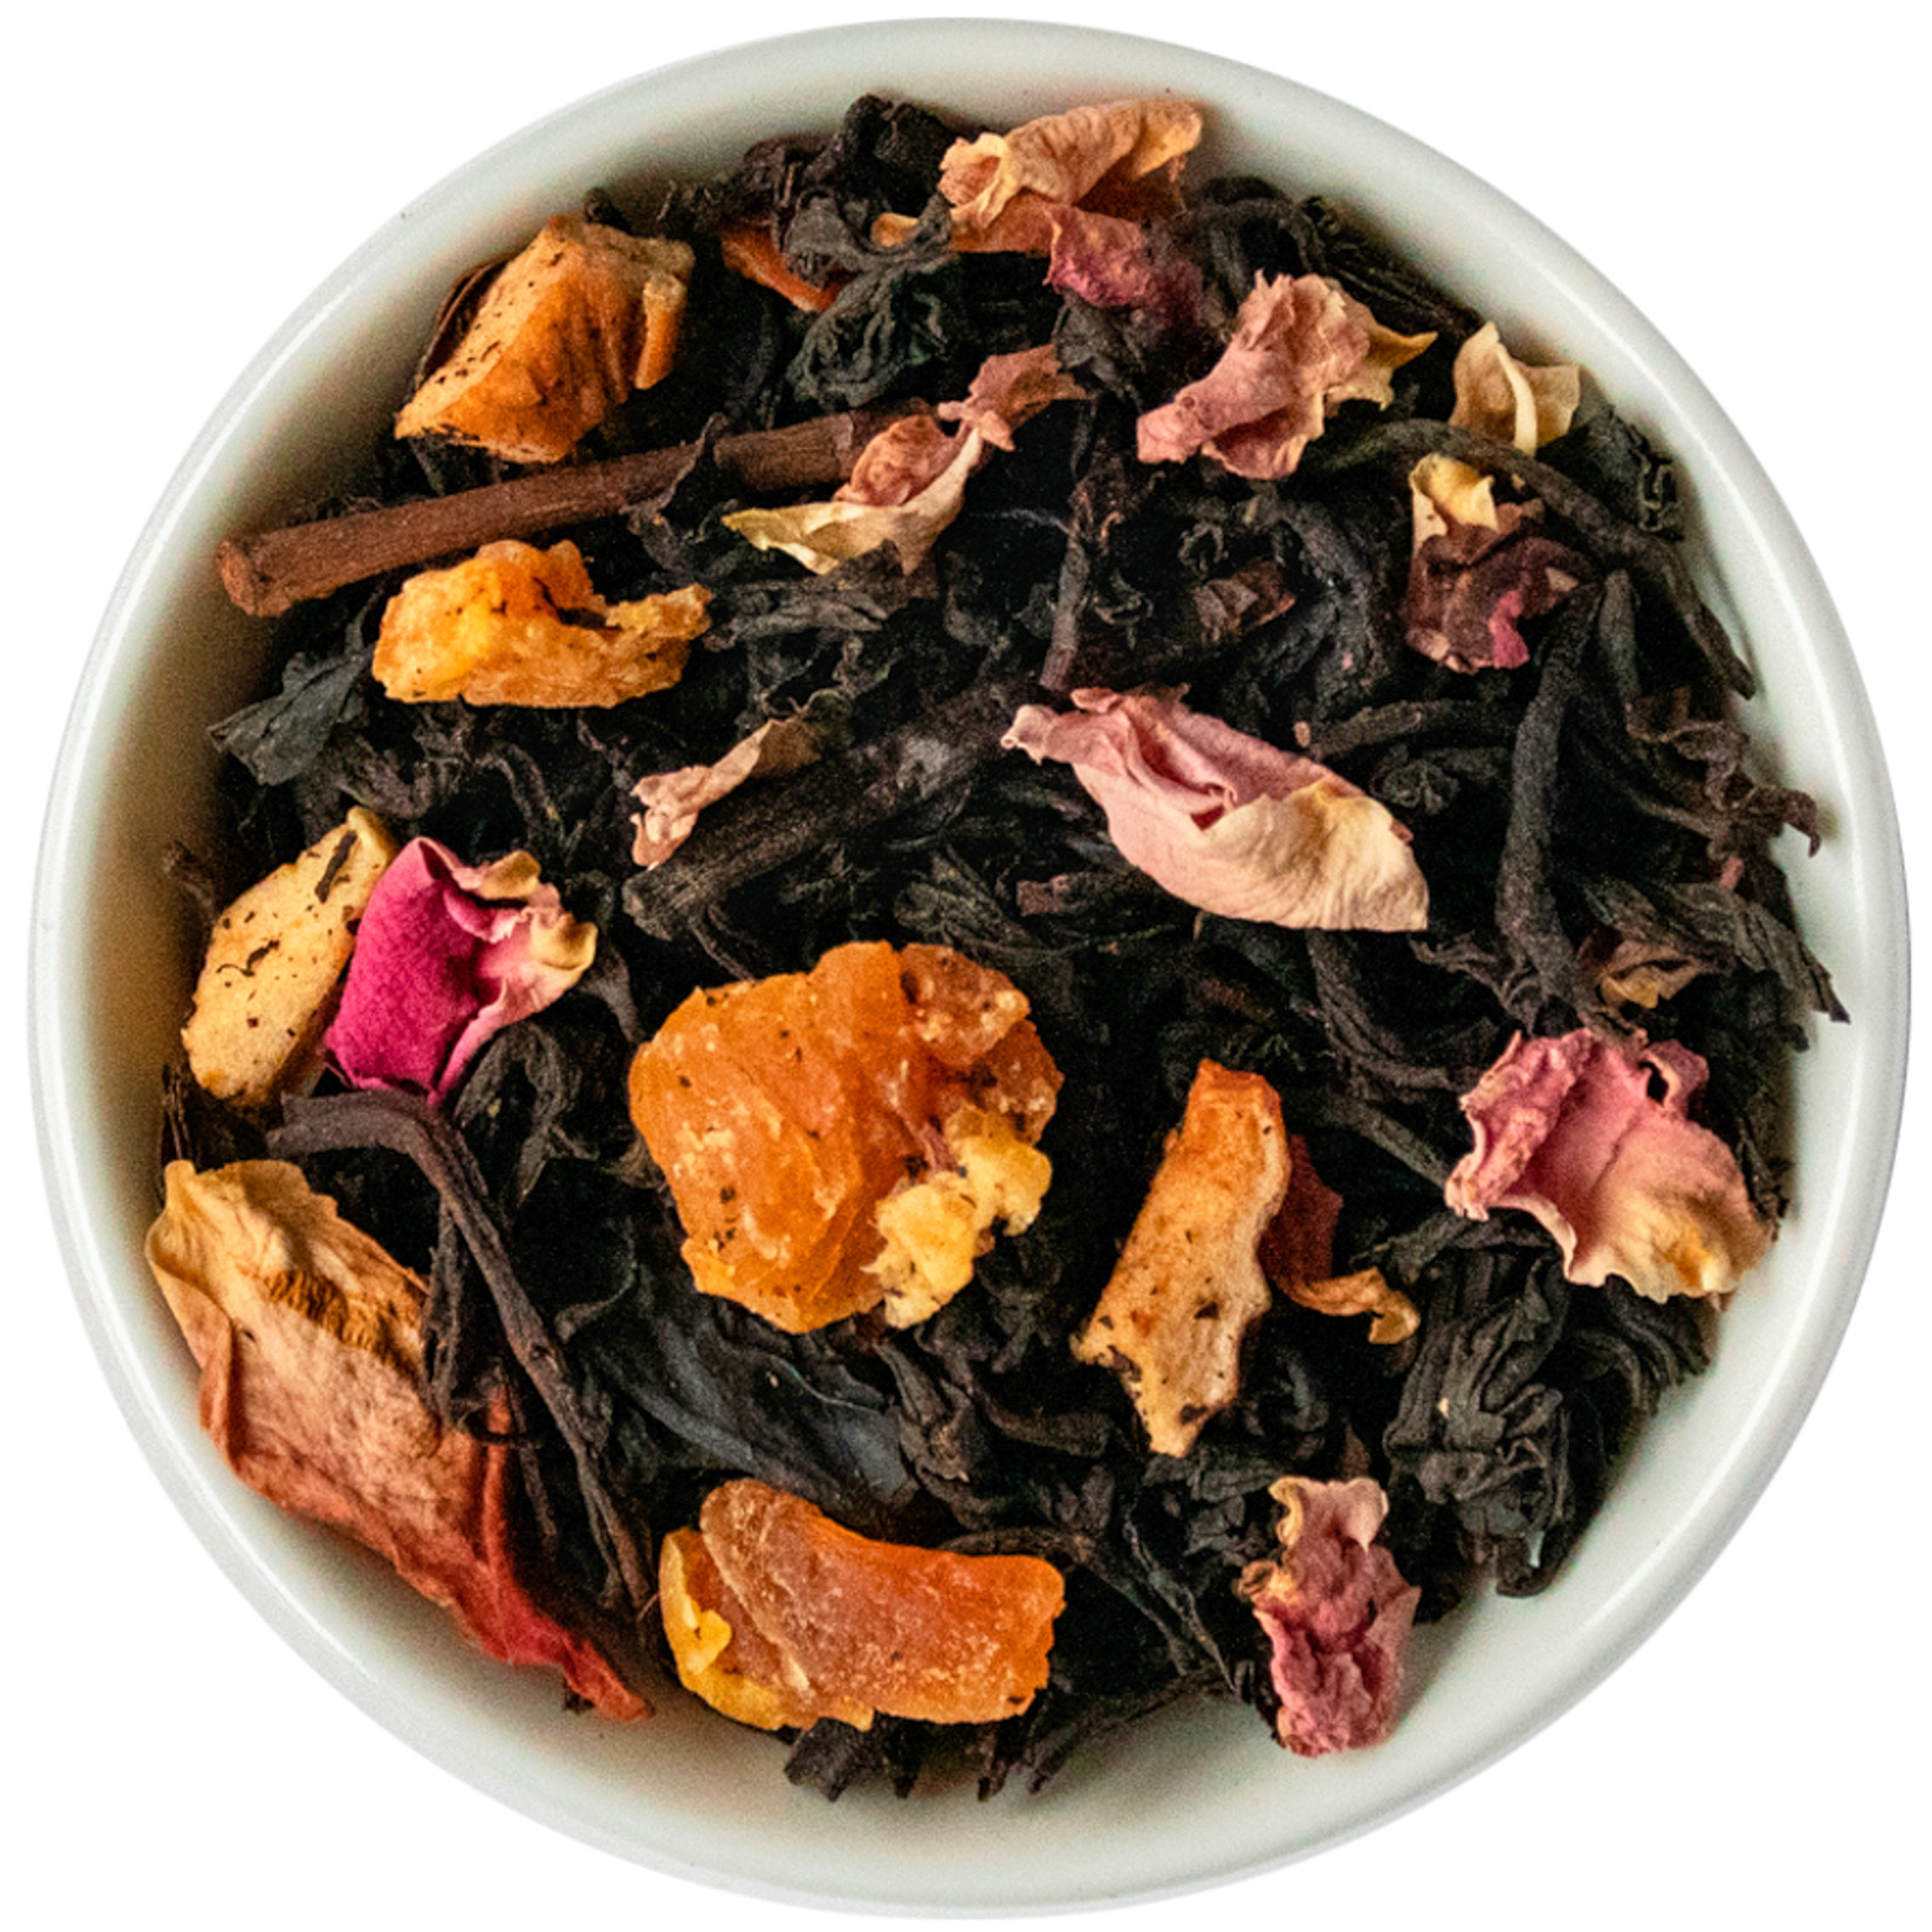 МАНГО-МАРАКУЙЯ - смесь черного индиского чаяи тропических фруктов (200 гр.)   